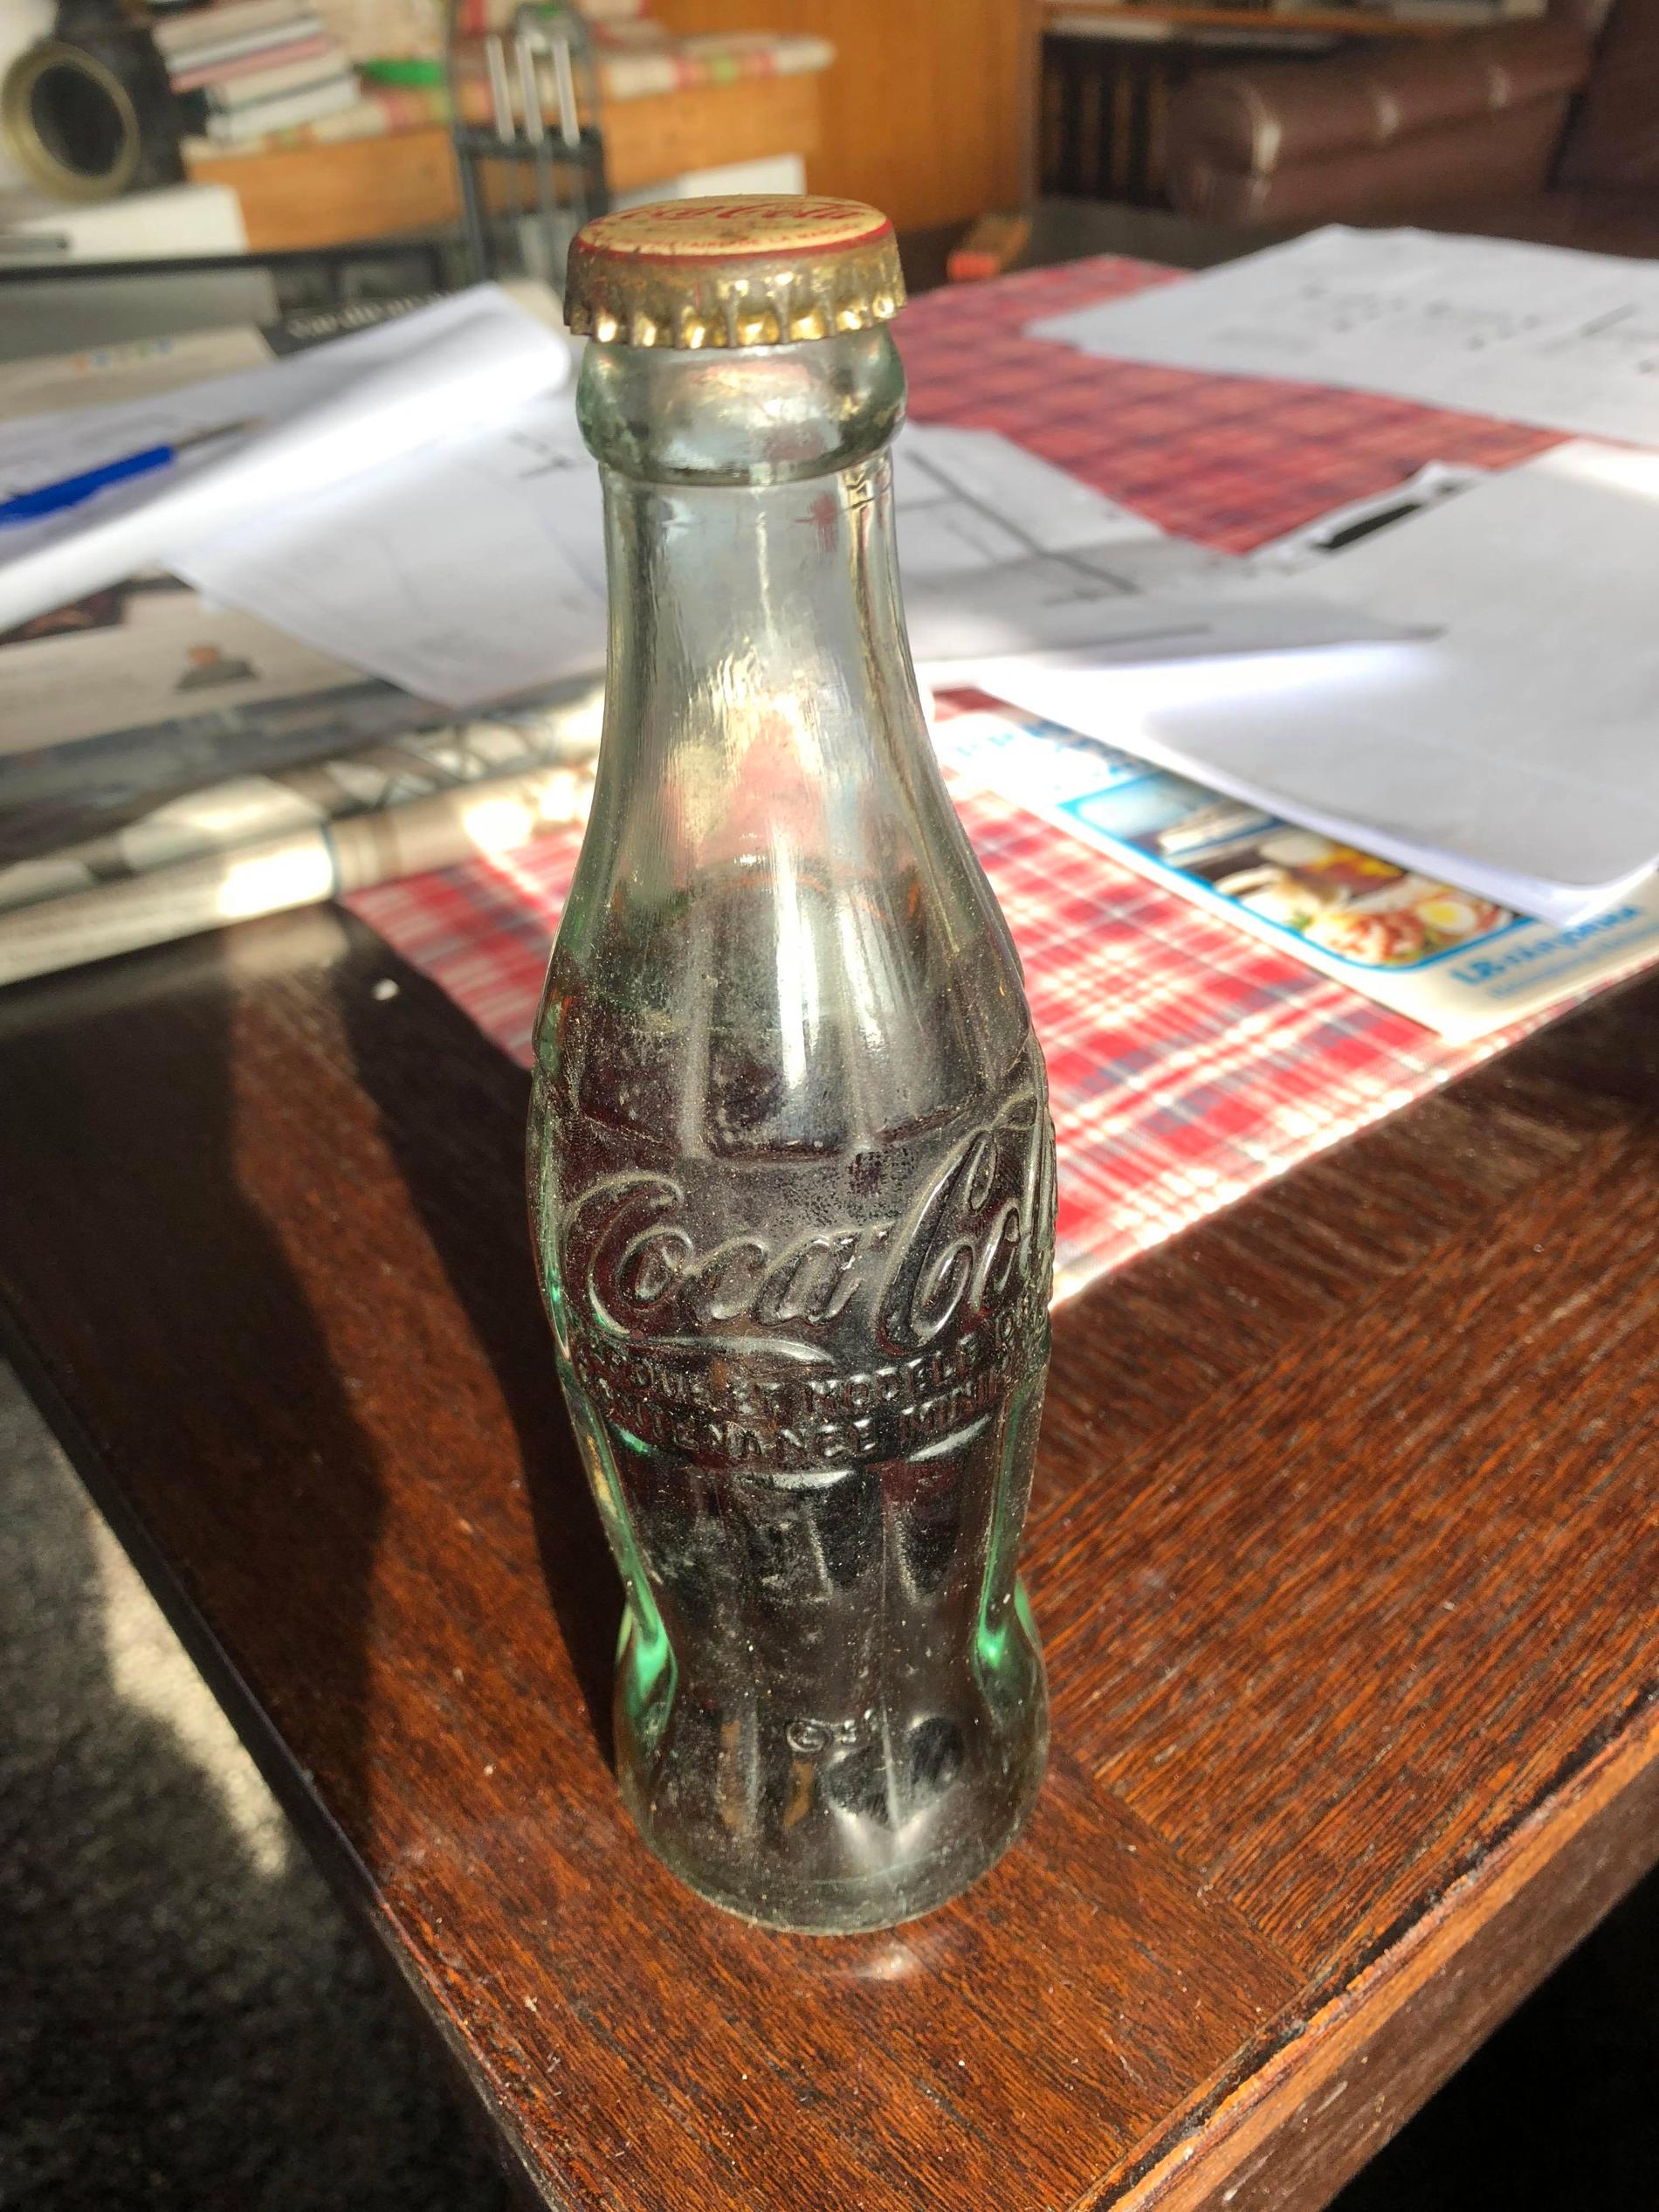 Nu säljer Håkan den över 70 år gamla Coca-cola flaskan – med tillhörande damm.